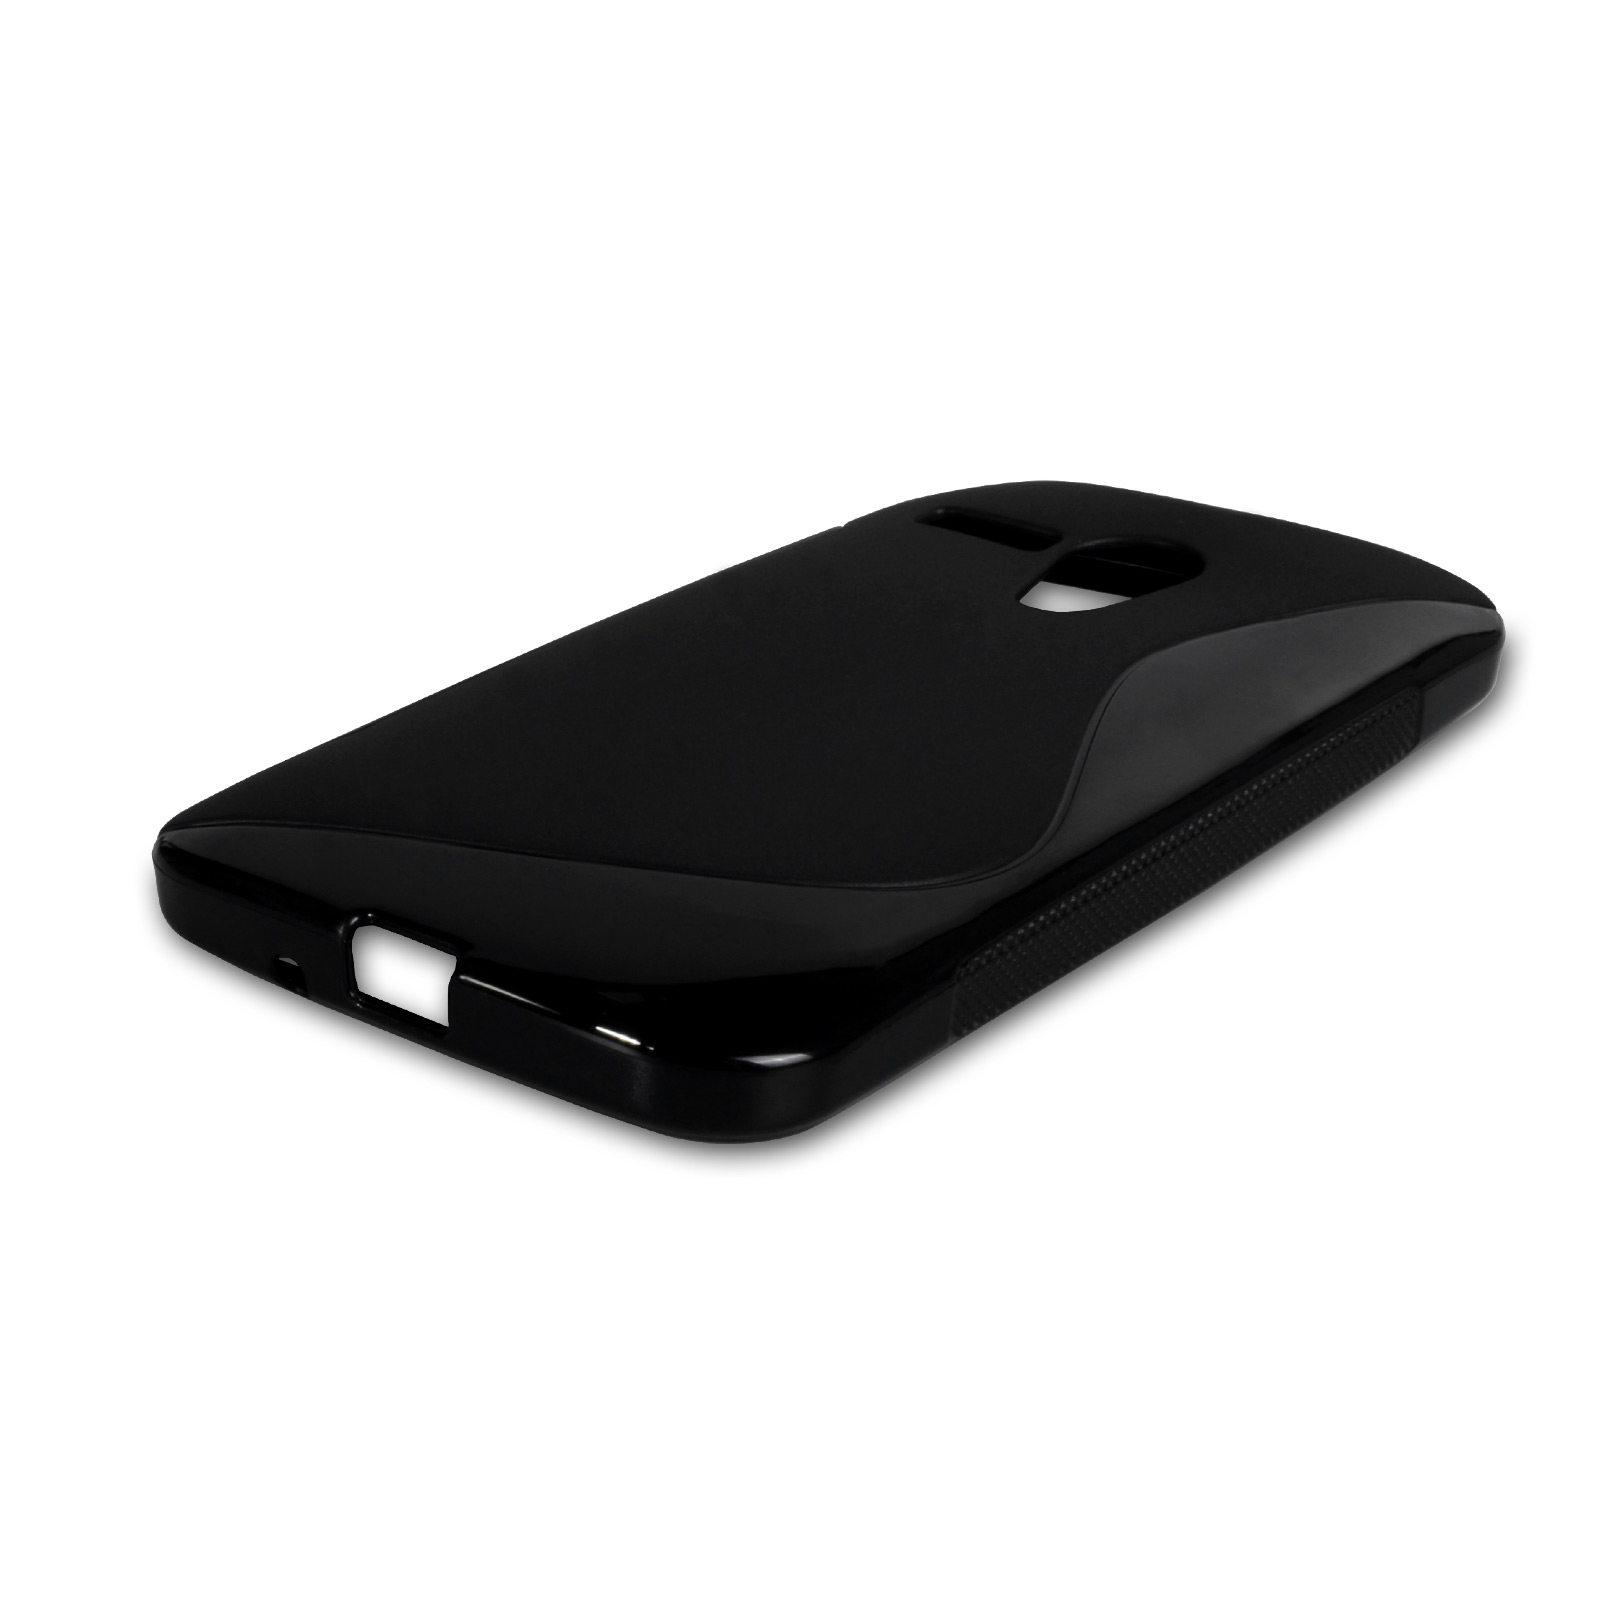 Caseflex Motorola Moto G Silicone Gel S-Line Case - Black